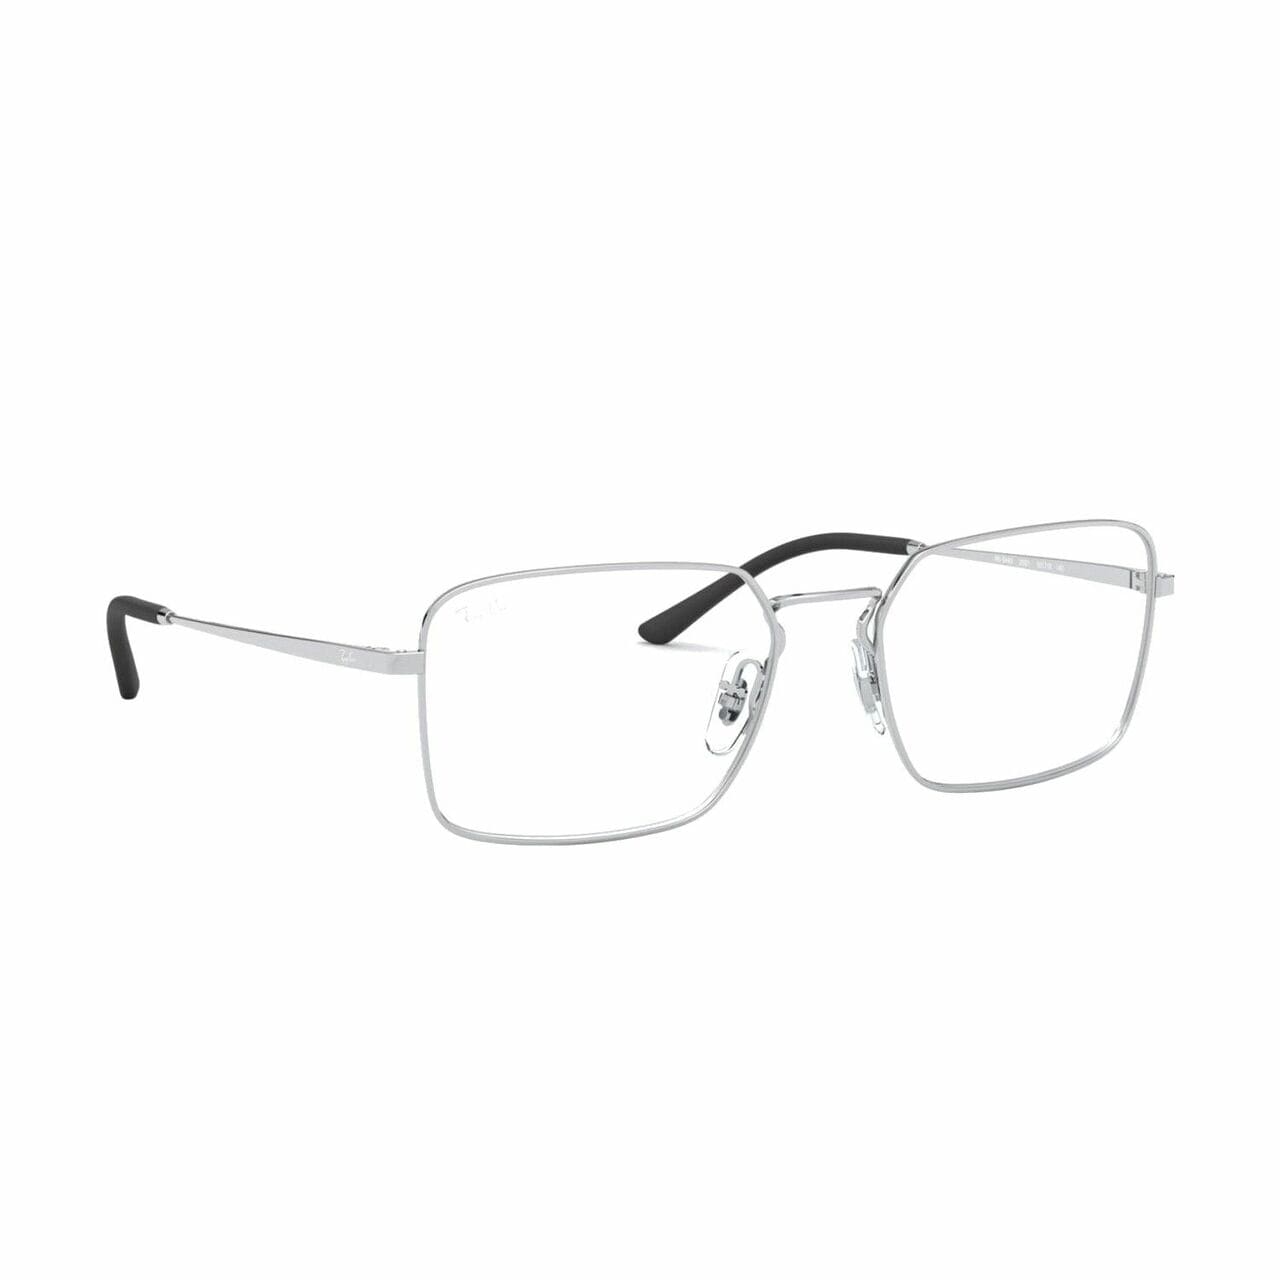 Ray-Ban RB6440-2501 Silver Square Unisex Metal Eyeglasses - 